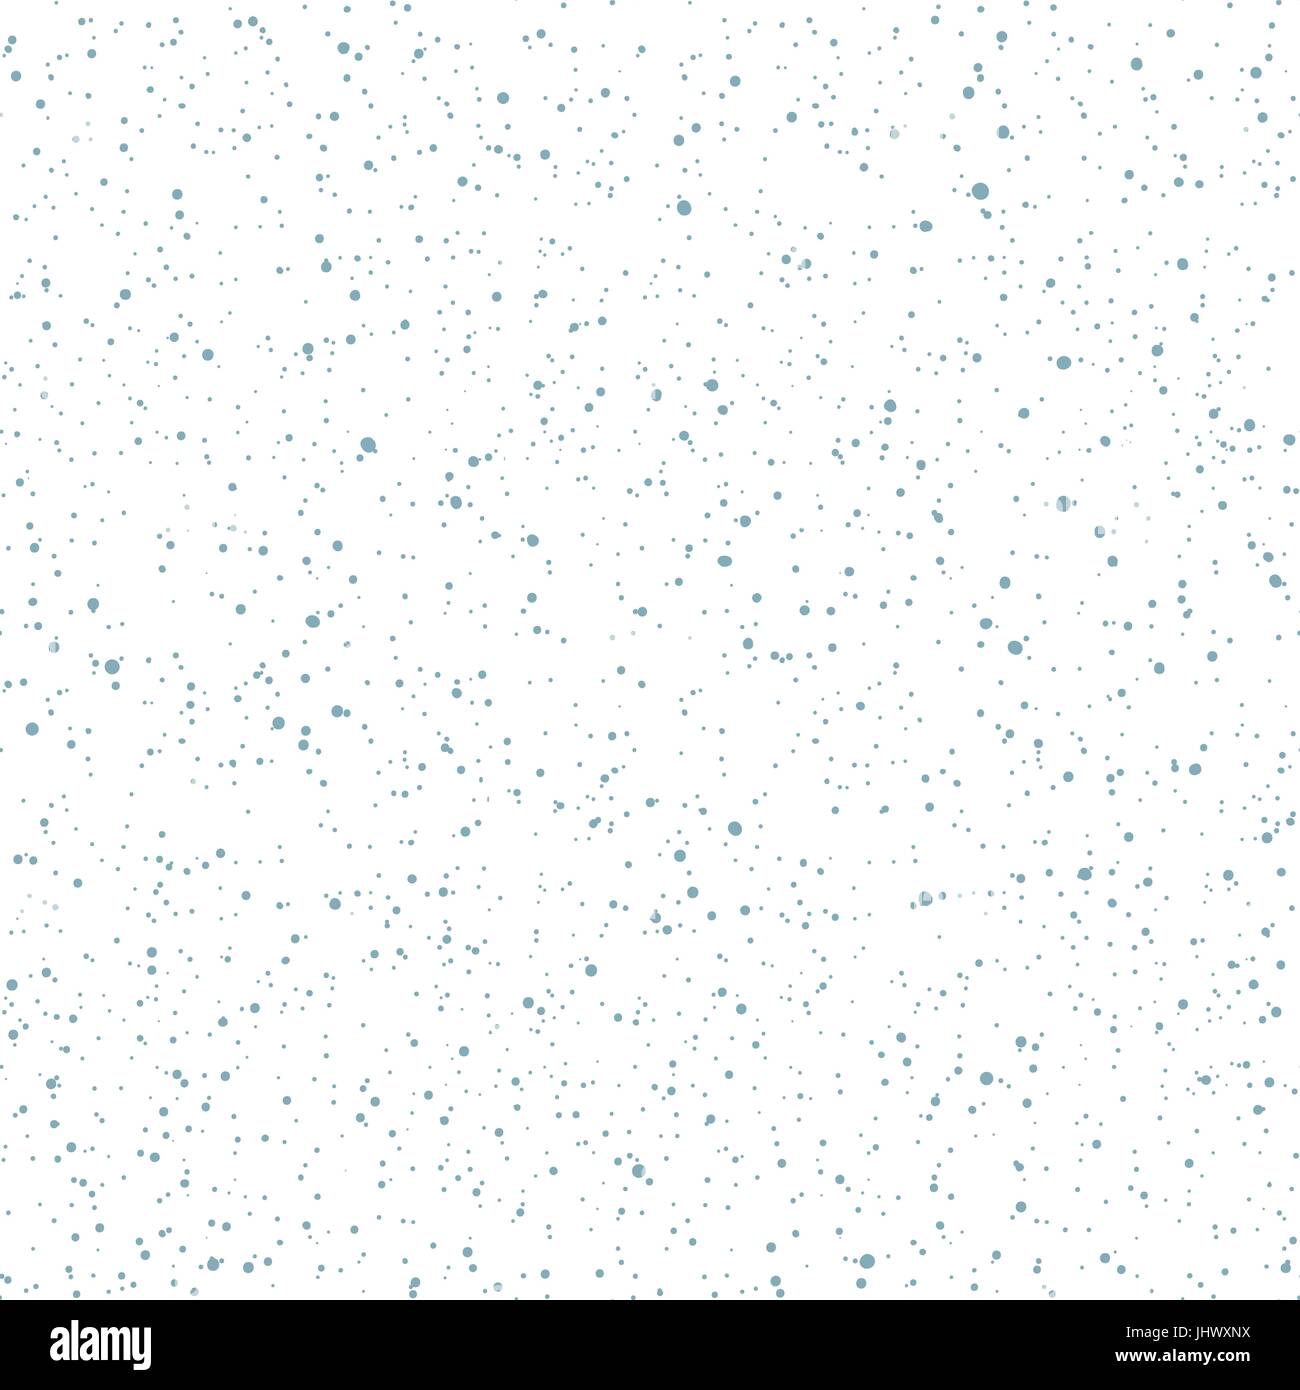 Weihnachten Musterdesign. Vektor Schneefall Hintergrund. Stock Vektor